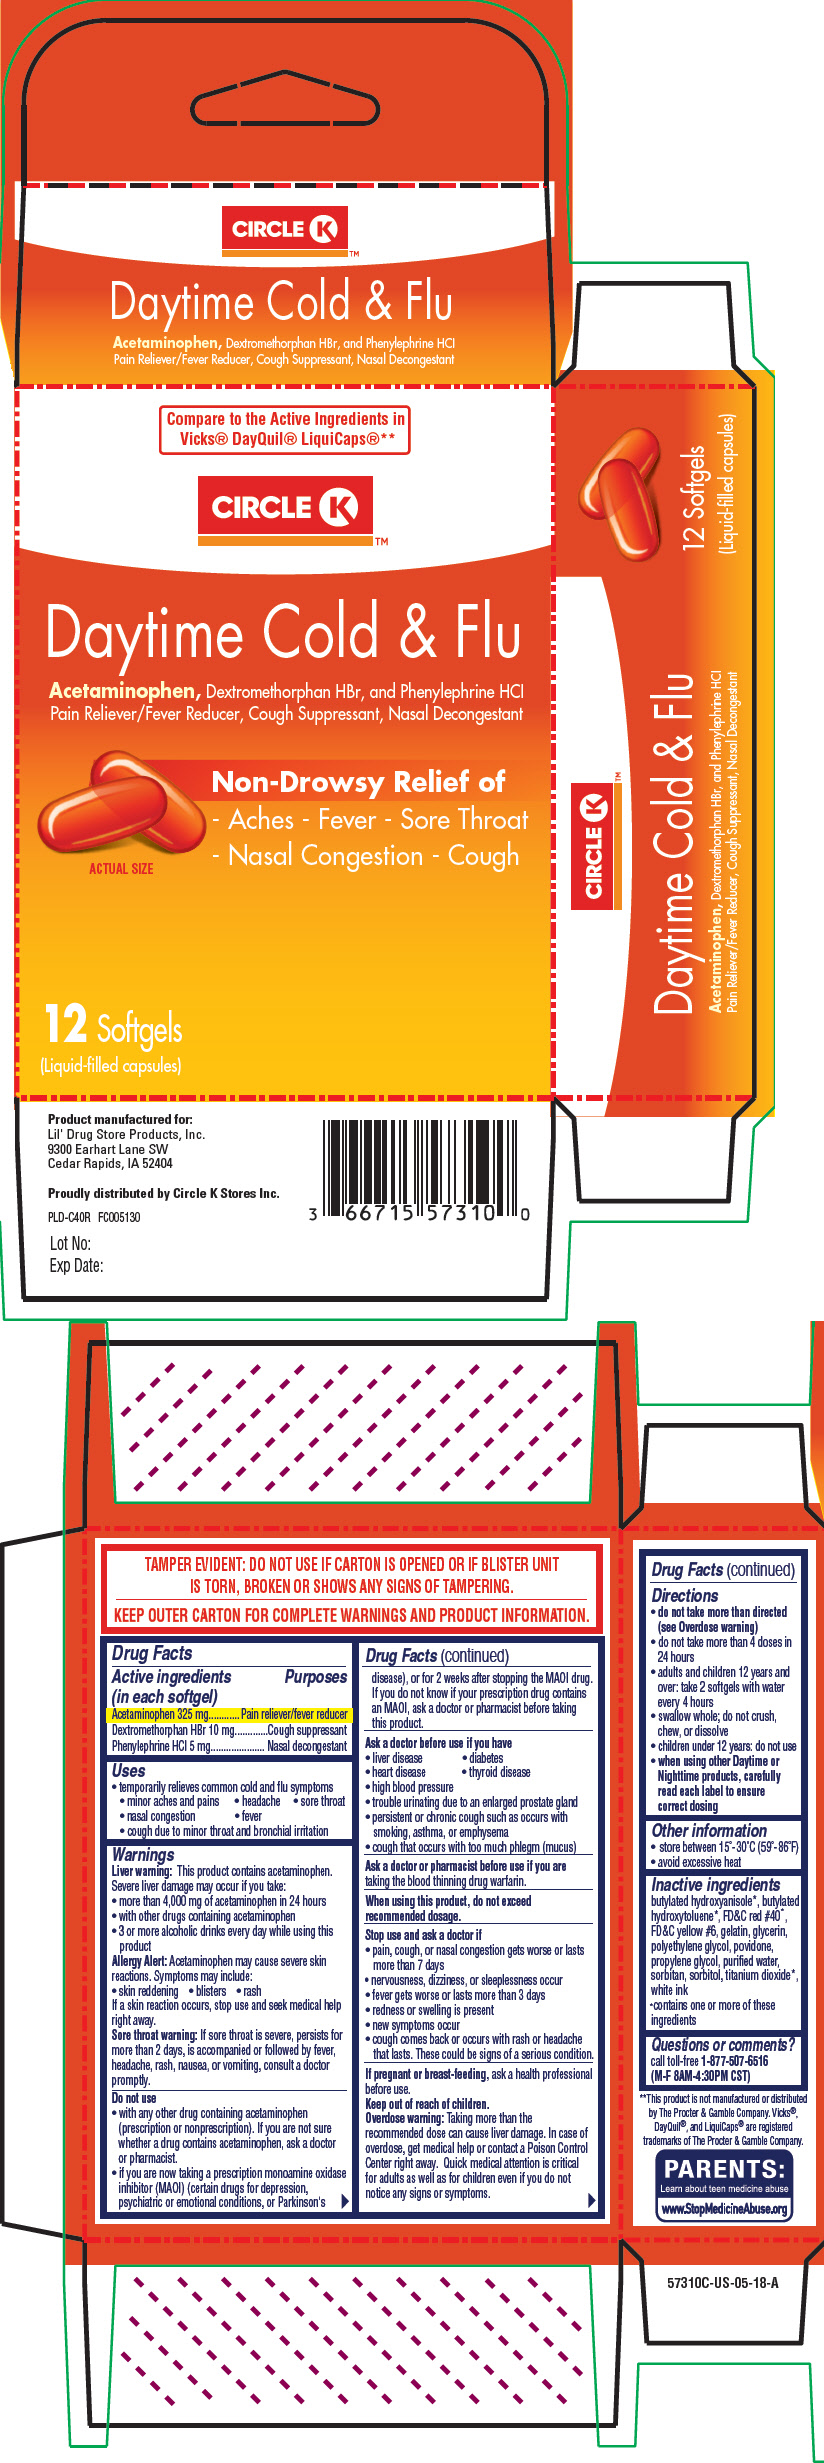 PRINCIPAL DISPLAY PANEL - 12 Capsule Blister Pack Carton - 5770